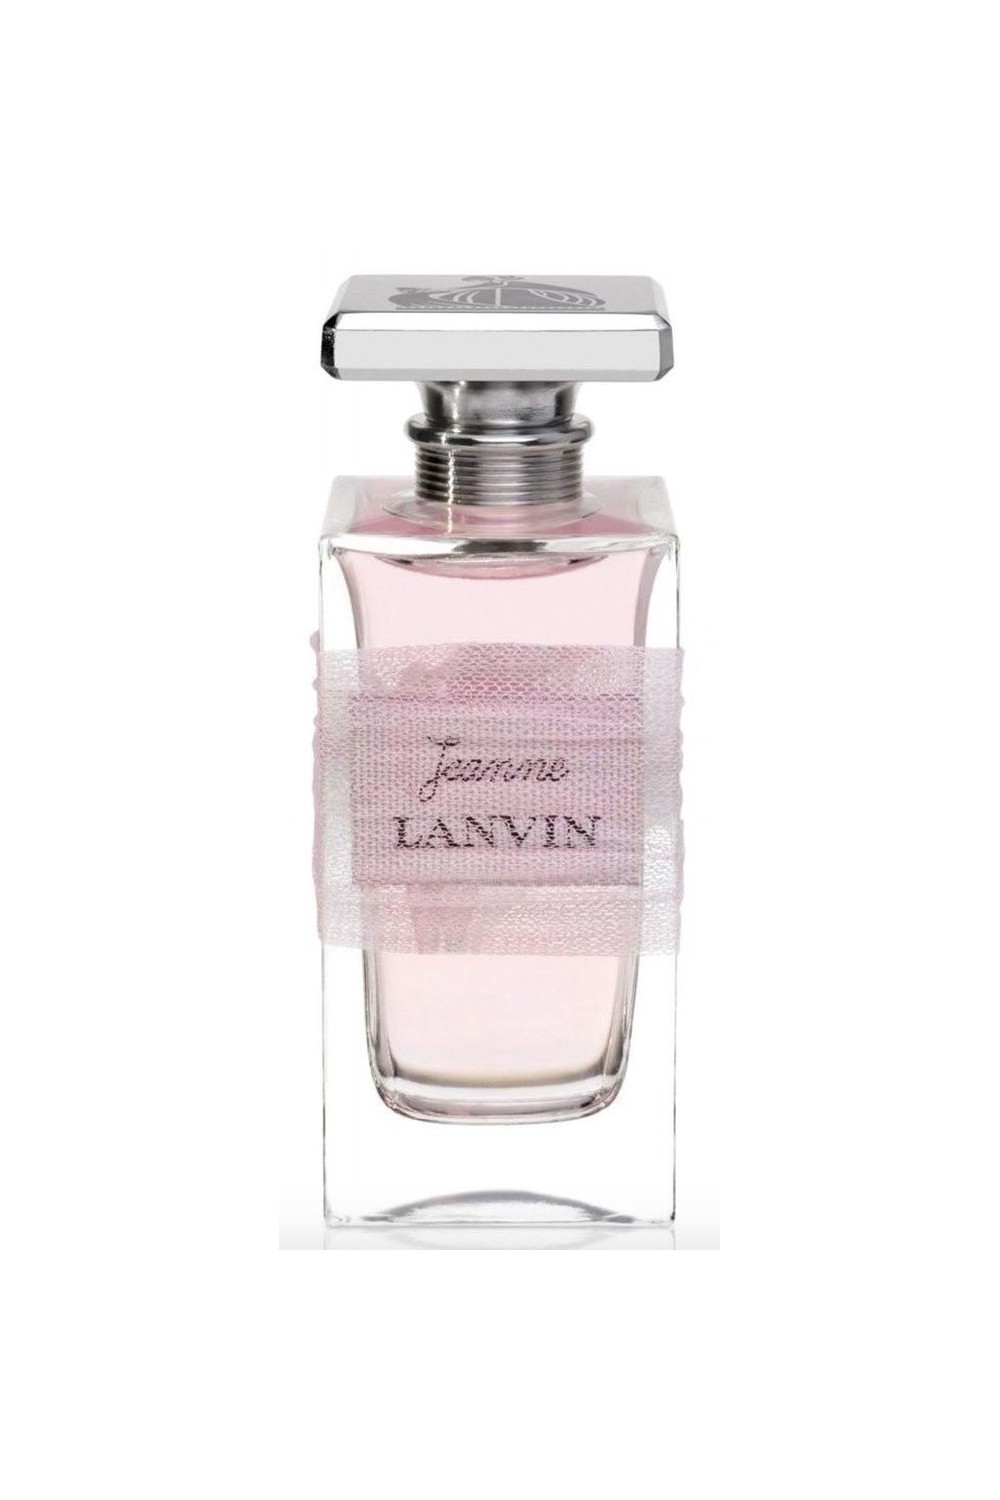 Lanvin Jeanne Lanvin Eau De Perfume Spray 50ml